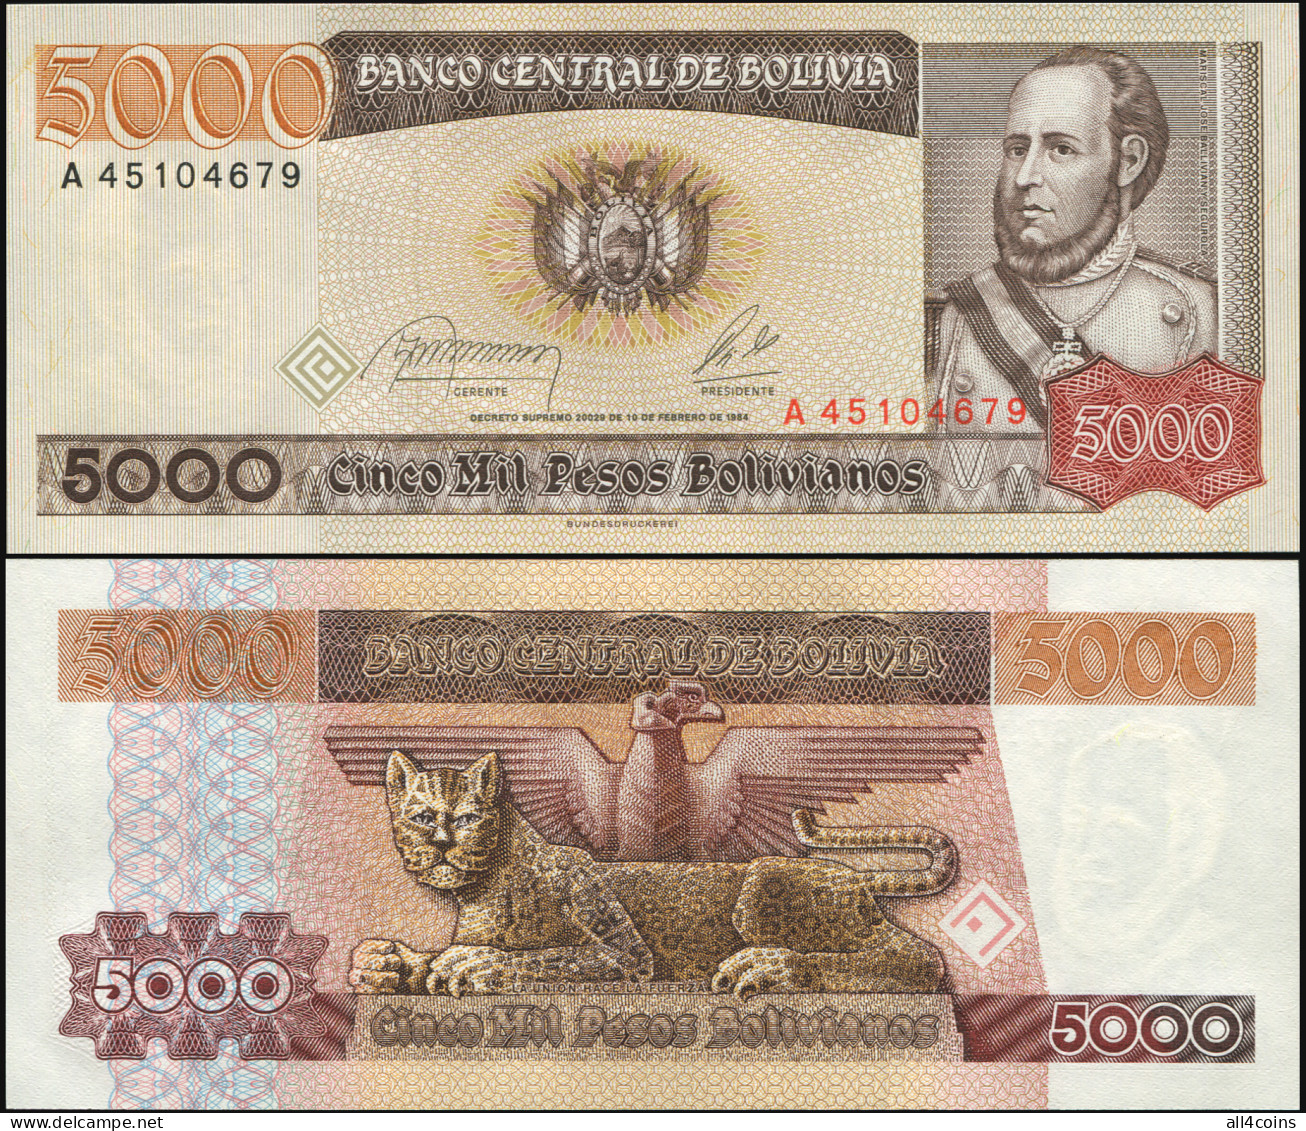 Bolivia 5000 Pesos Bolivianos. L.10.02.1984 Unc. Banknote Cat# P.168a - Bolivie